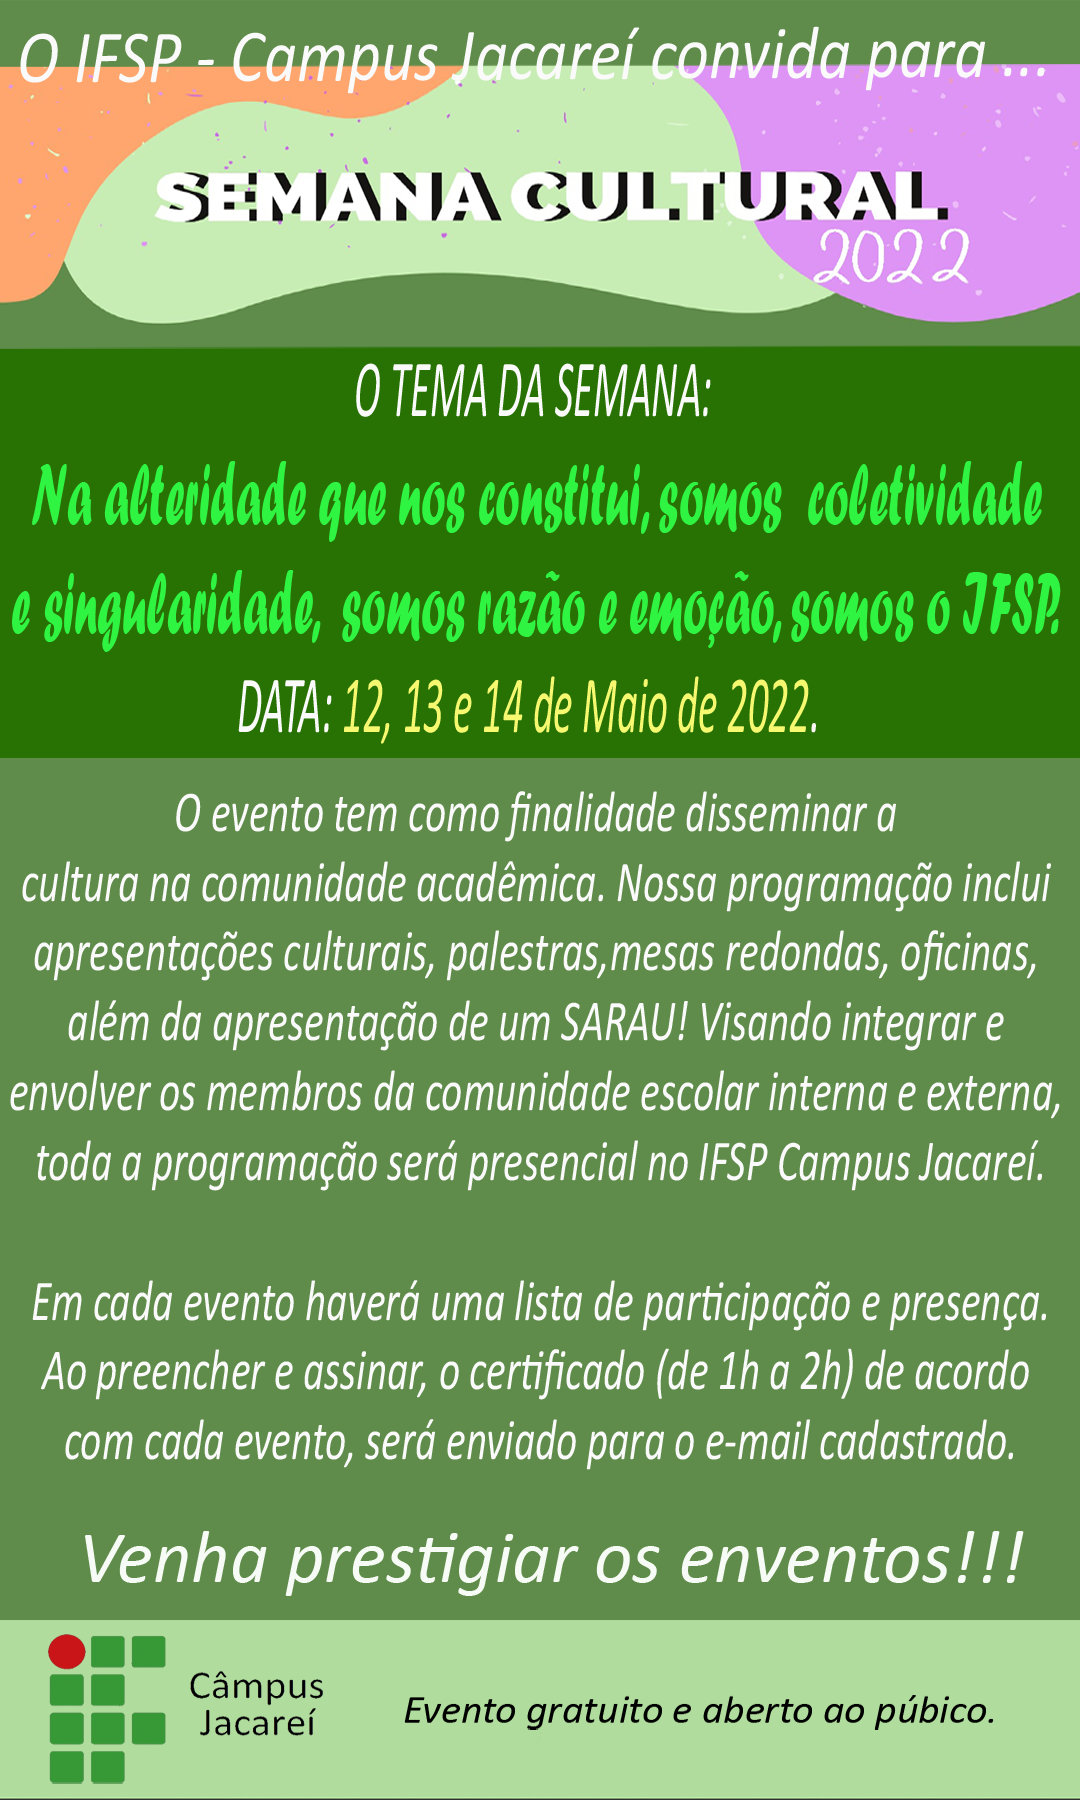 Foto de Semana Cultural IFSP-JCR 2022 - Dança de salão (forró/sertanejo)